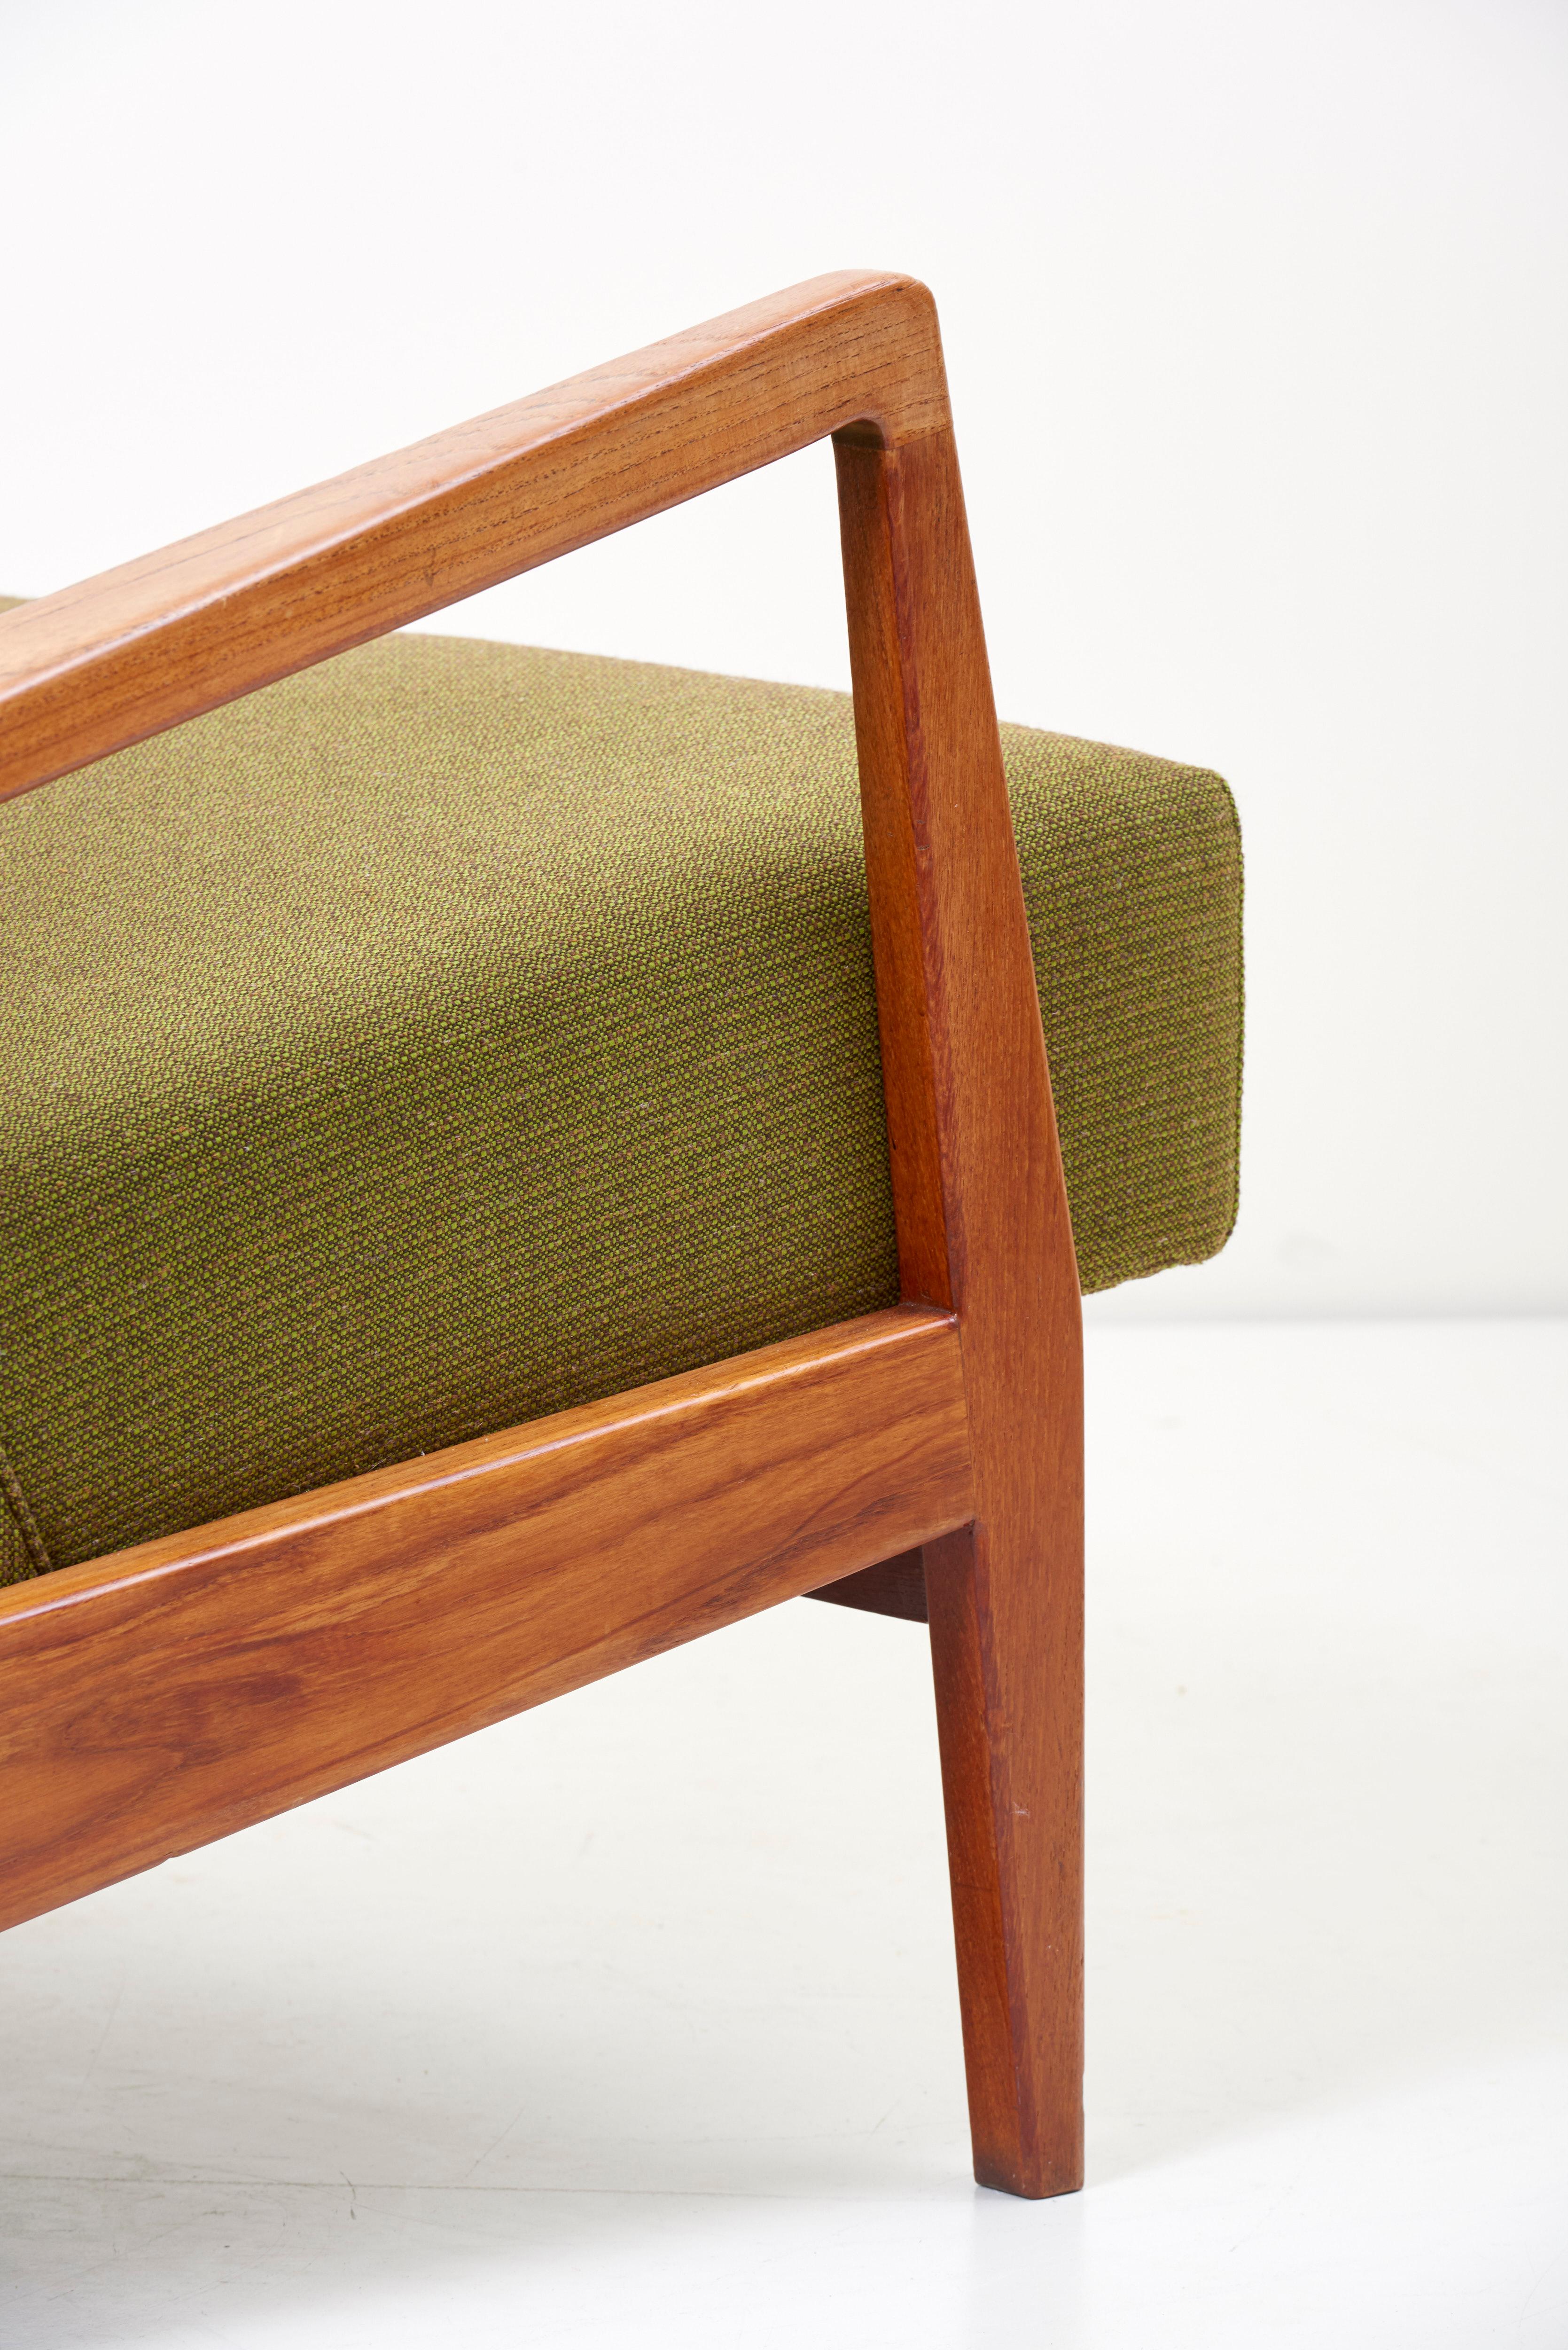 Restored U453 Lounge Chair by Jens Risom 2